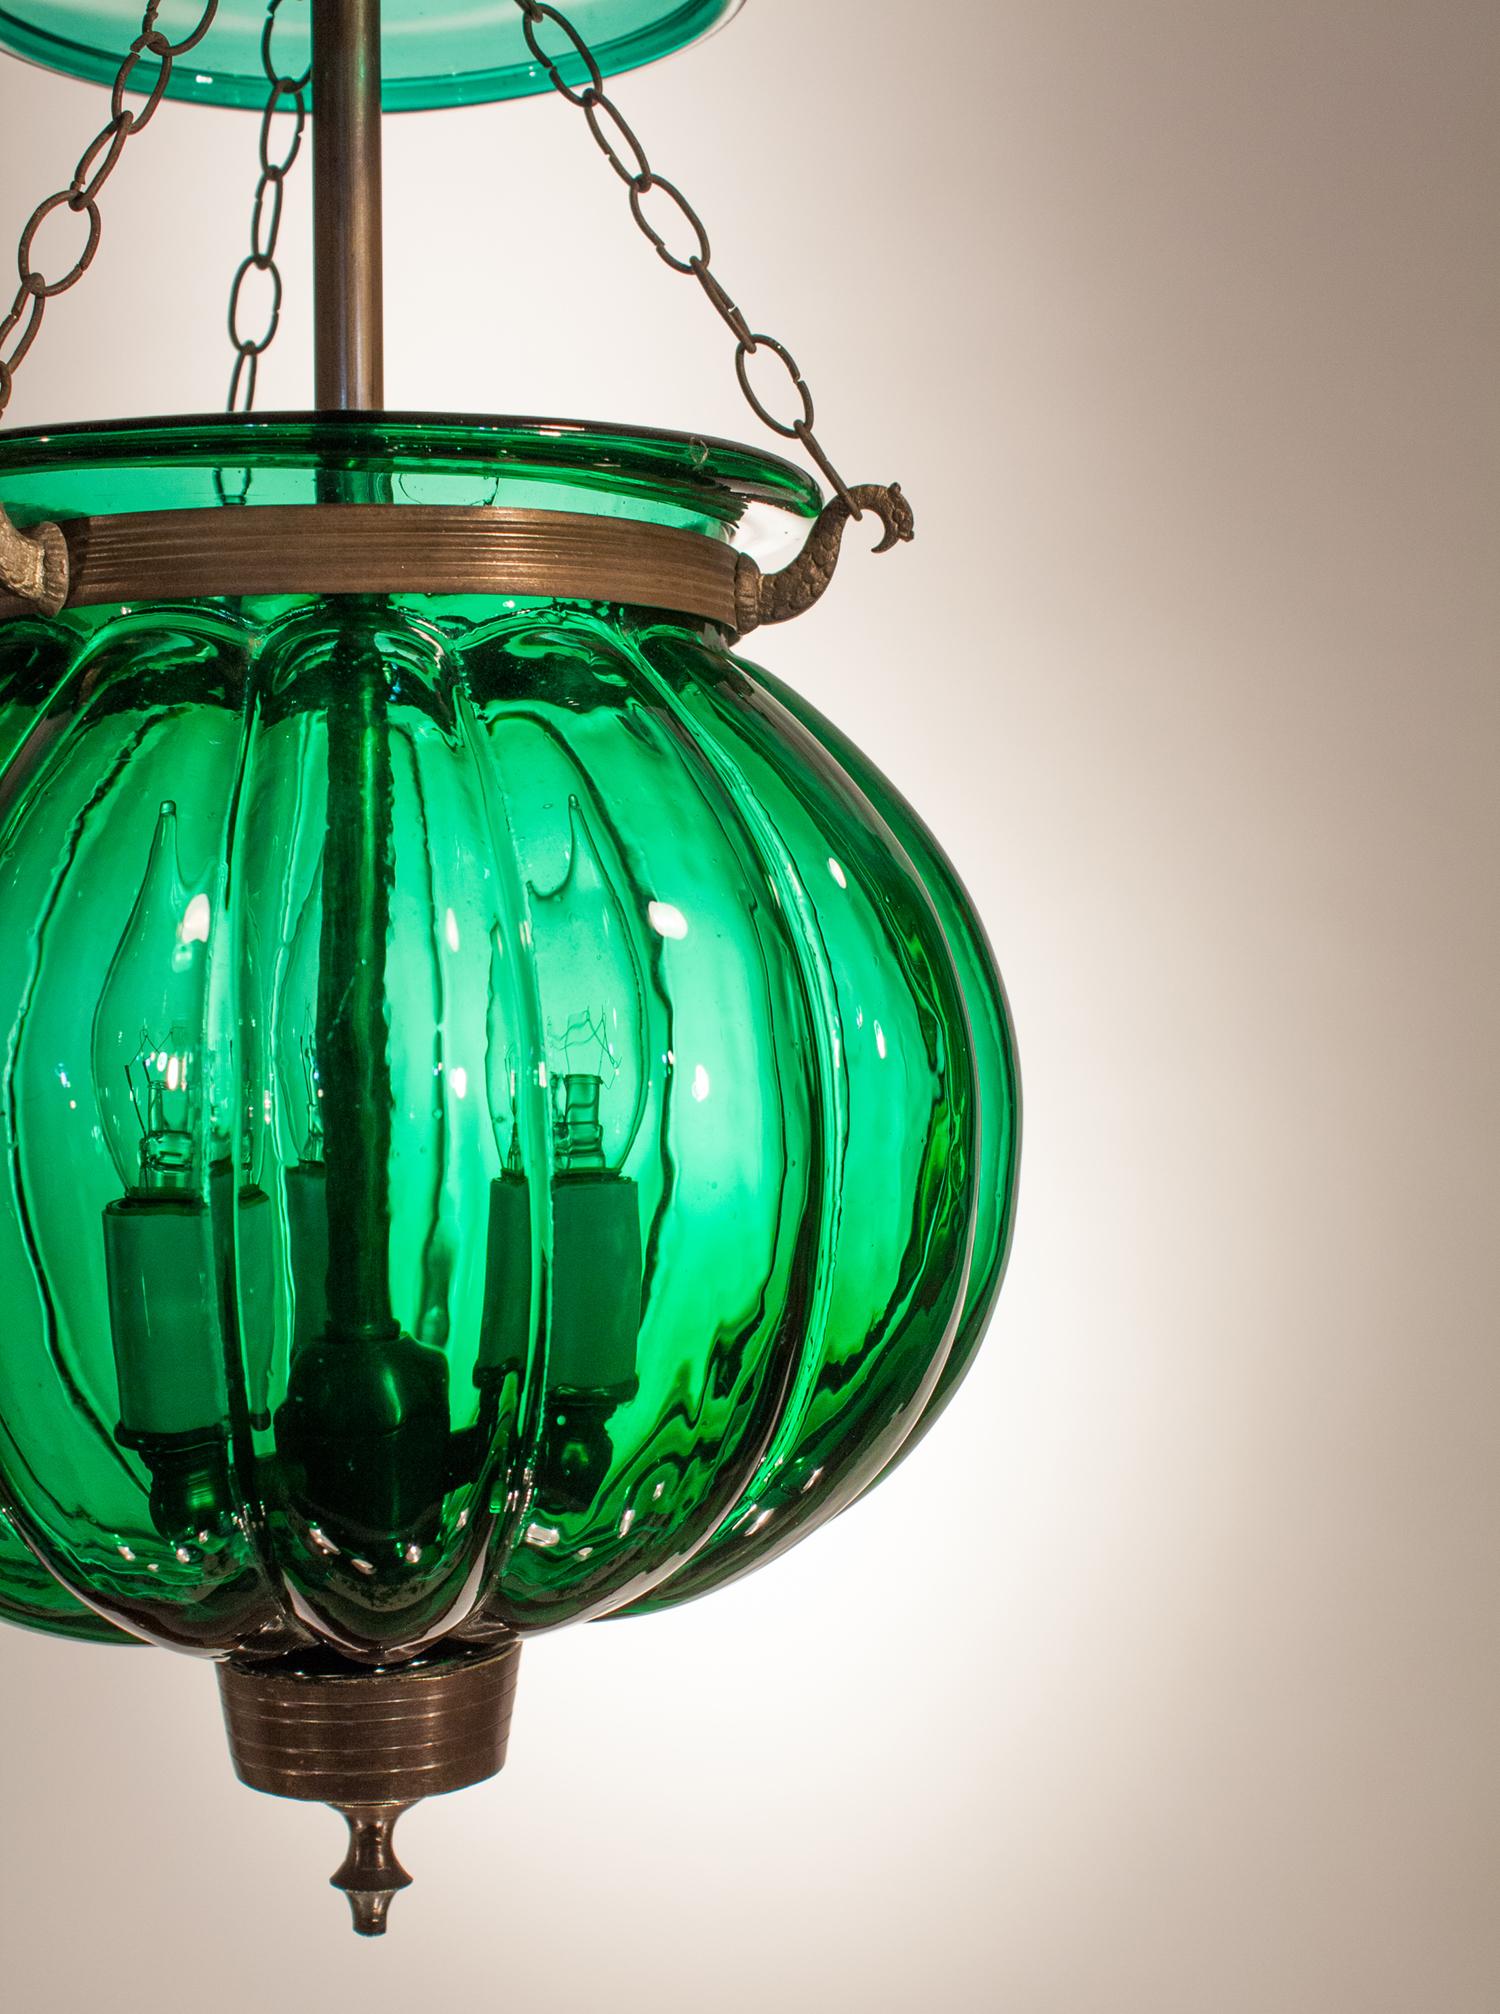 High Victorian Antique Emerald Green Pumpkin or Melon Bell Jar Lantern